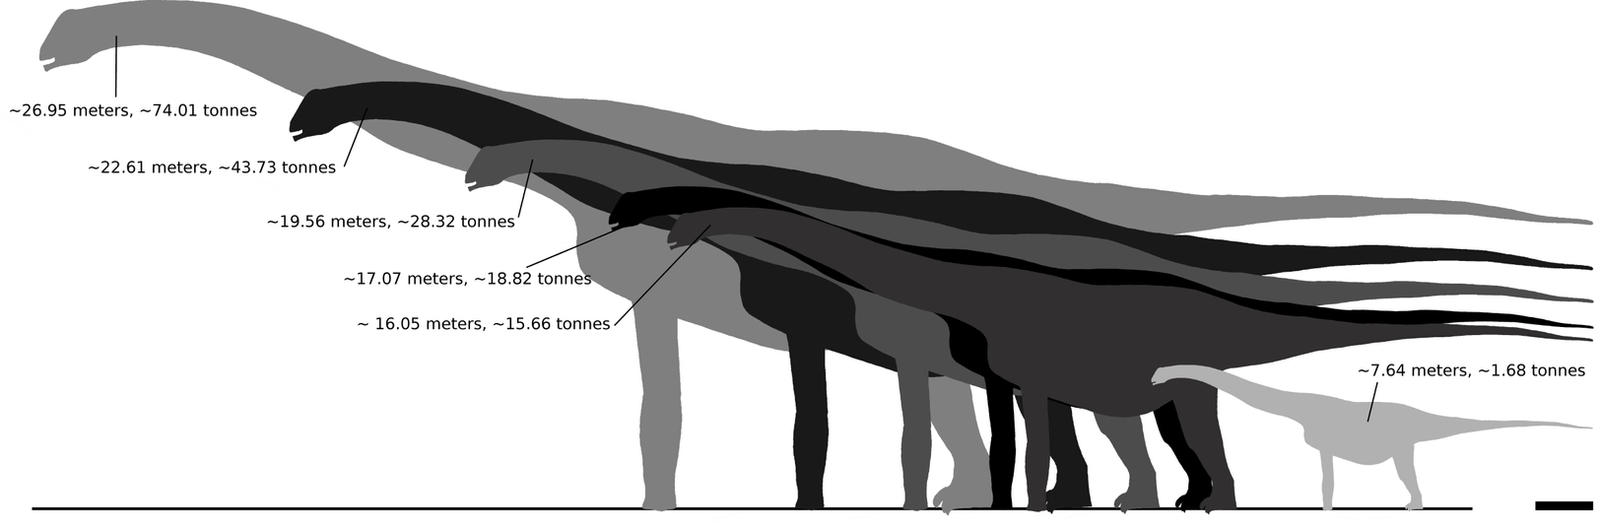 Alamosaurus sizes